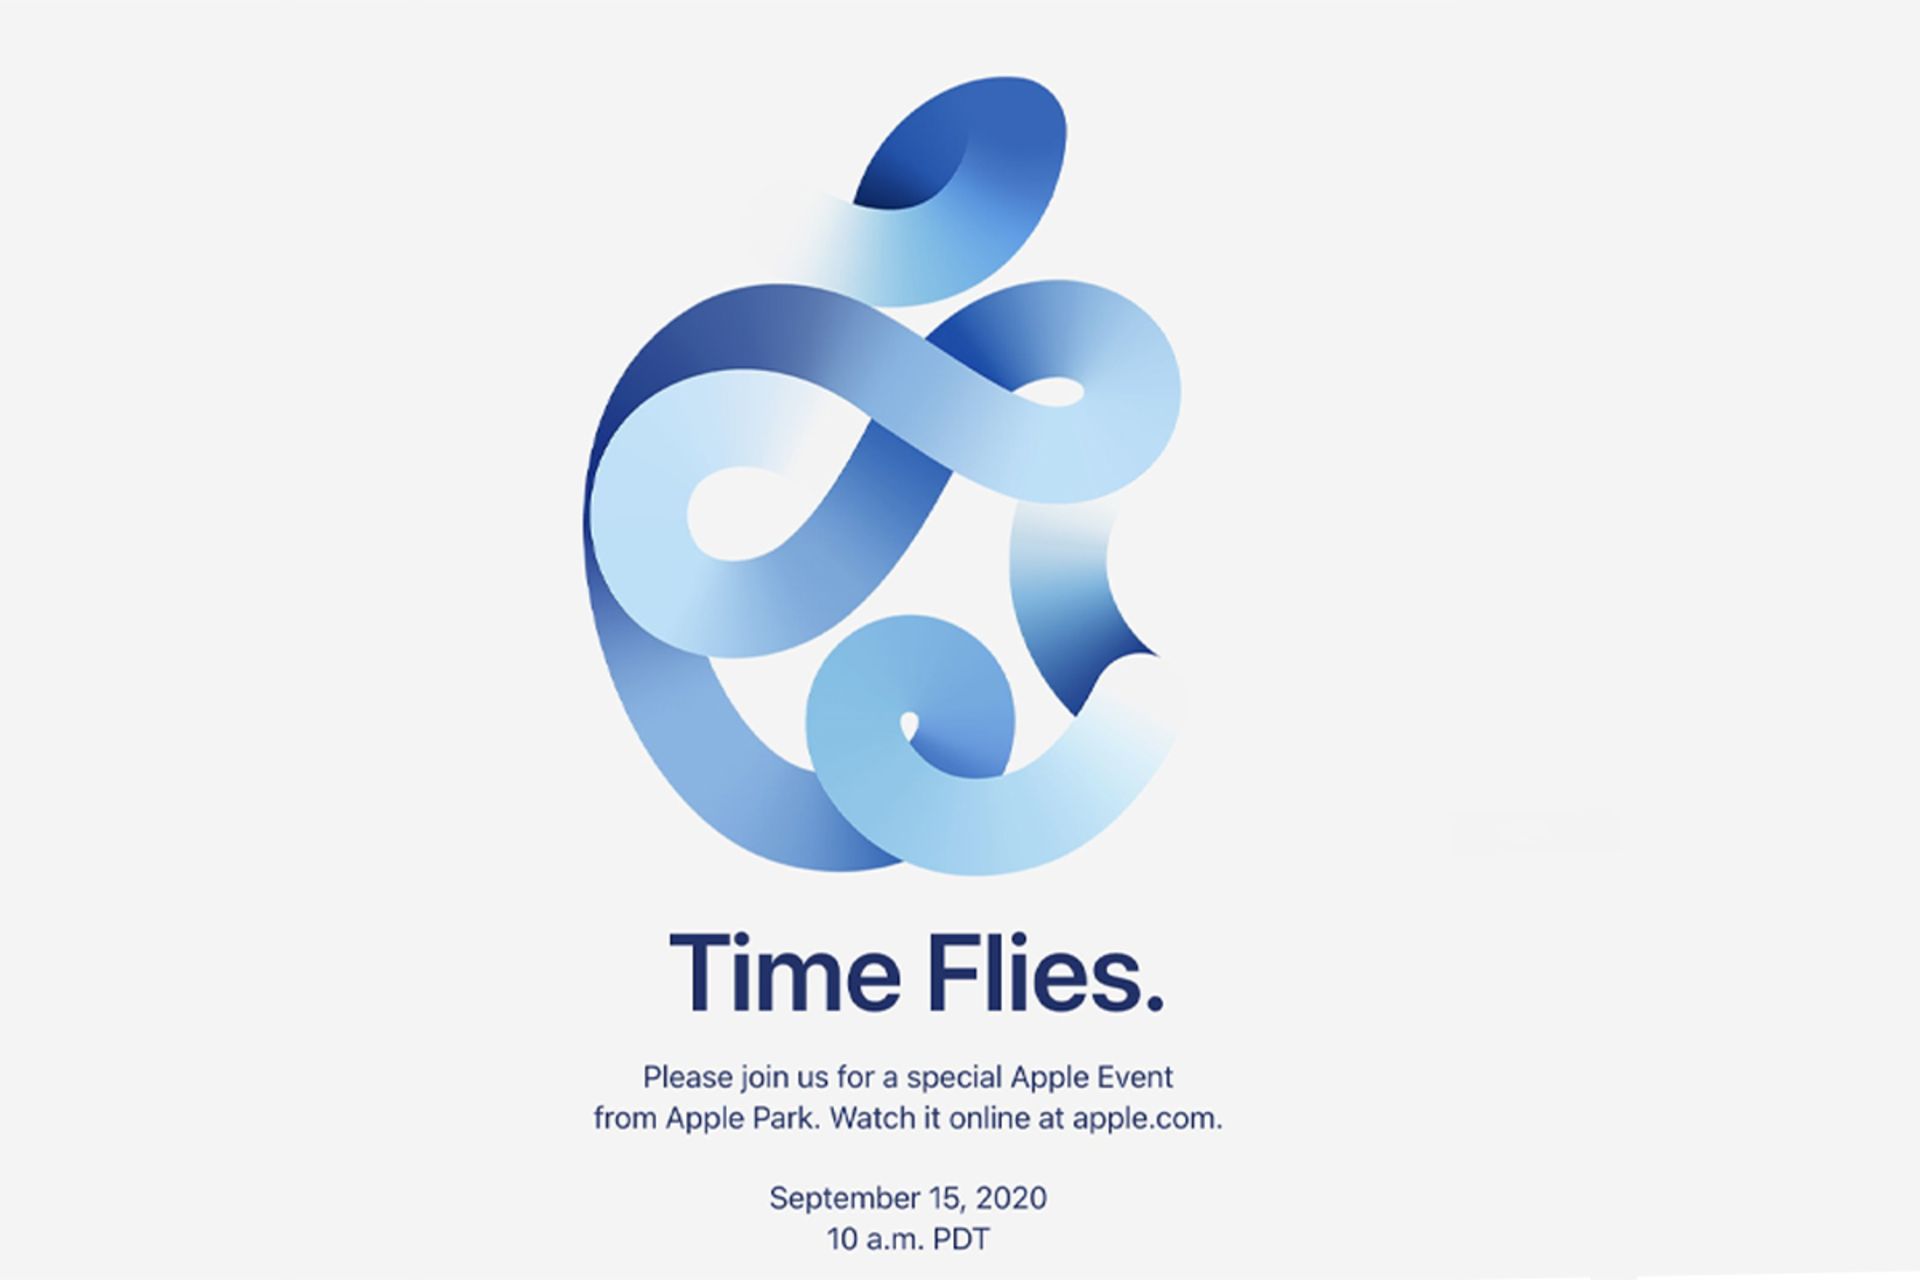 پوستر رویداد Time Flies اپل / Apple